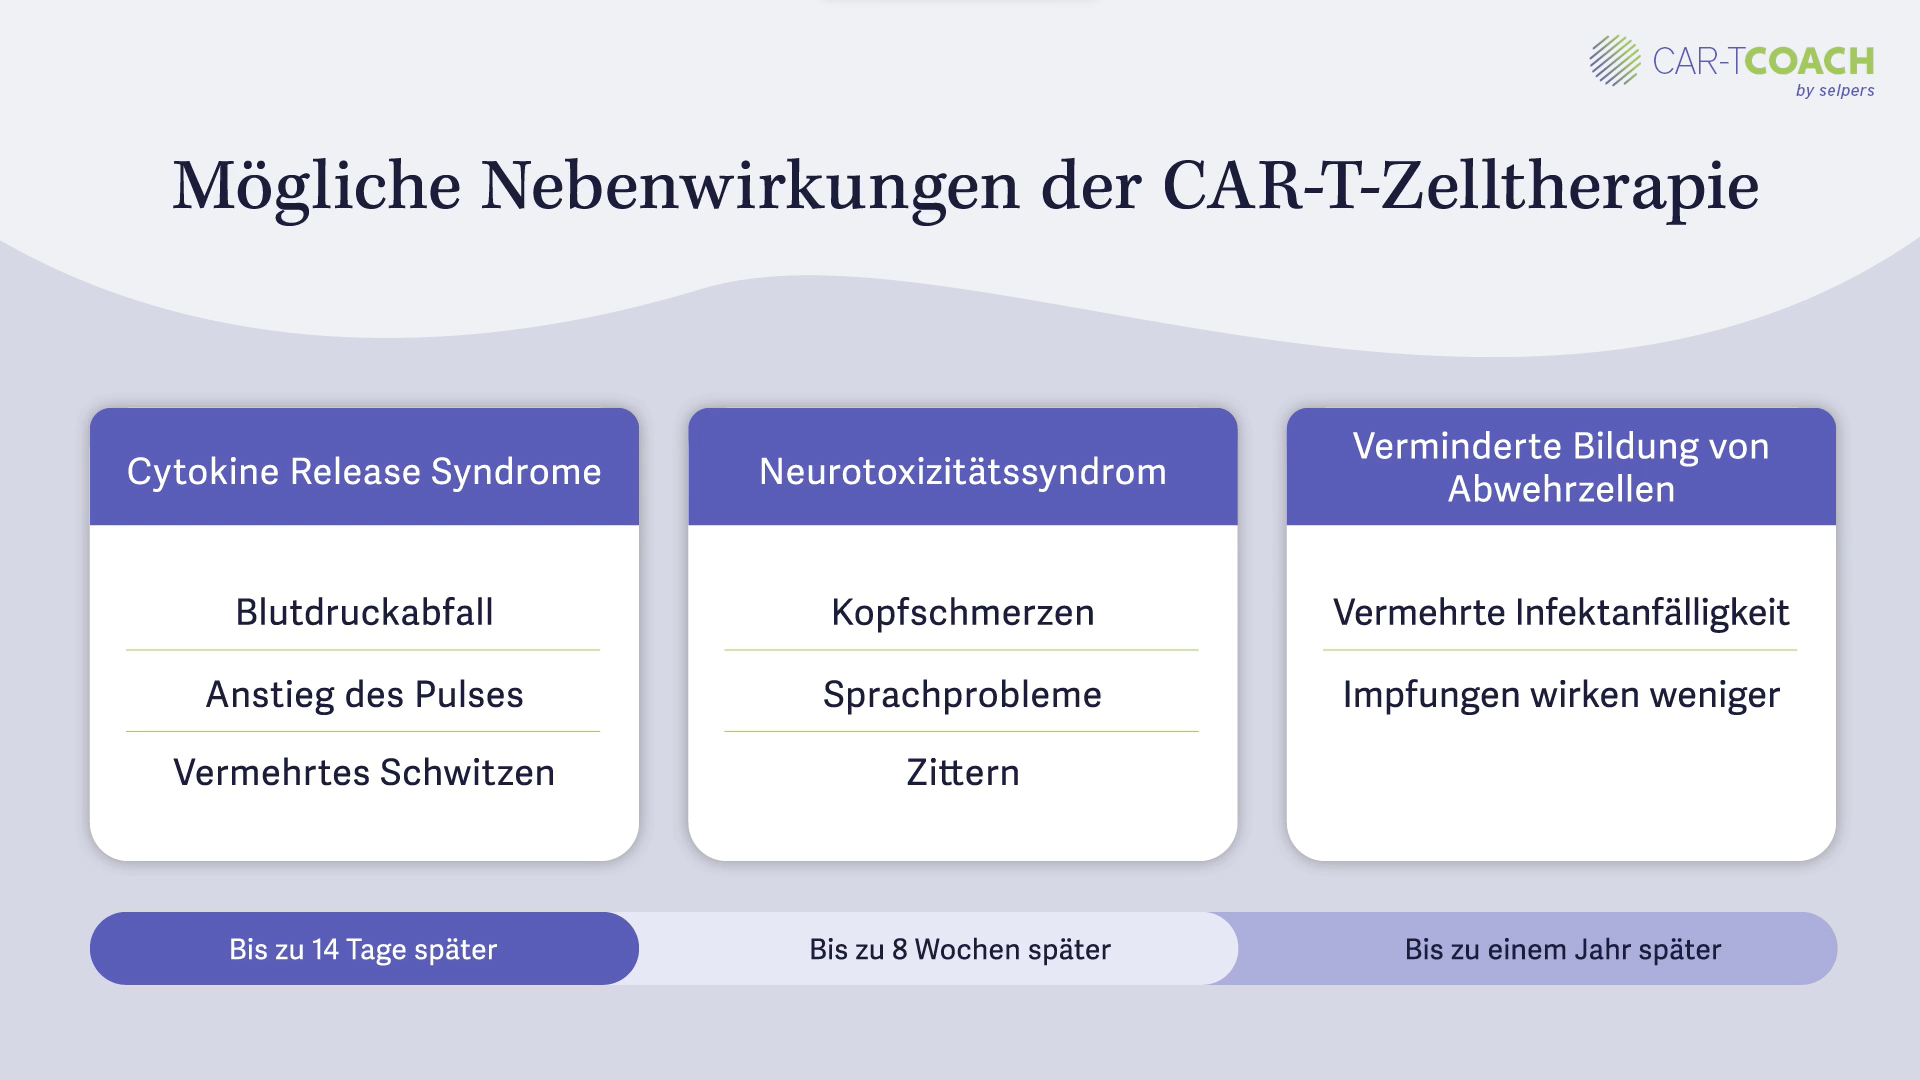 Mögliche Nebenwirkungen der CAR-T-Zelltherapie